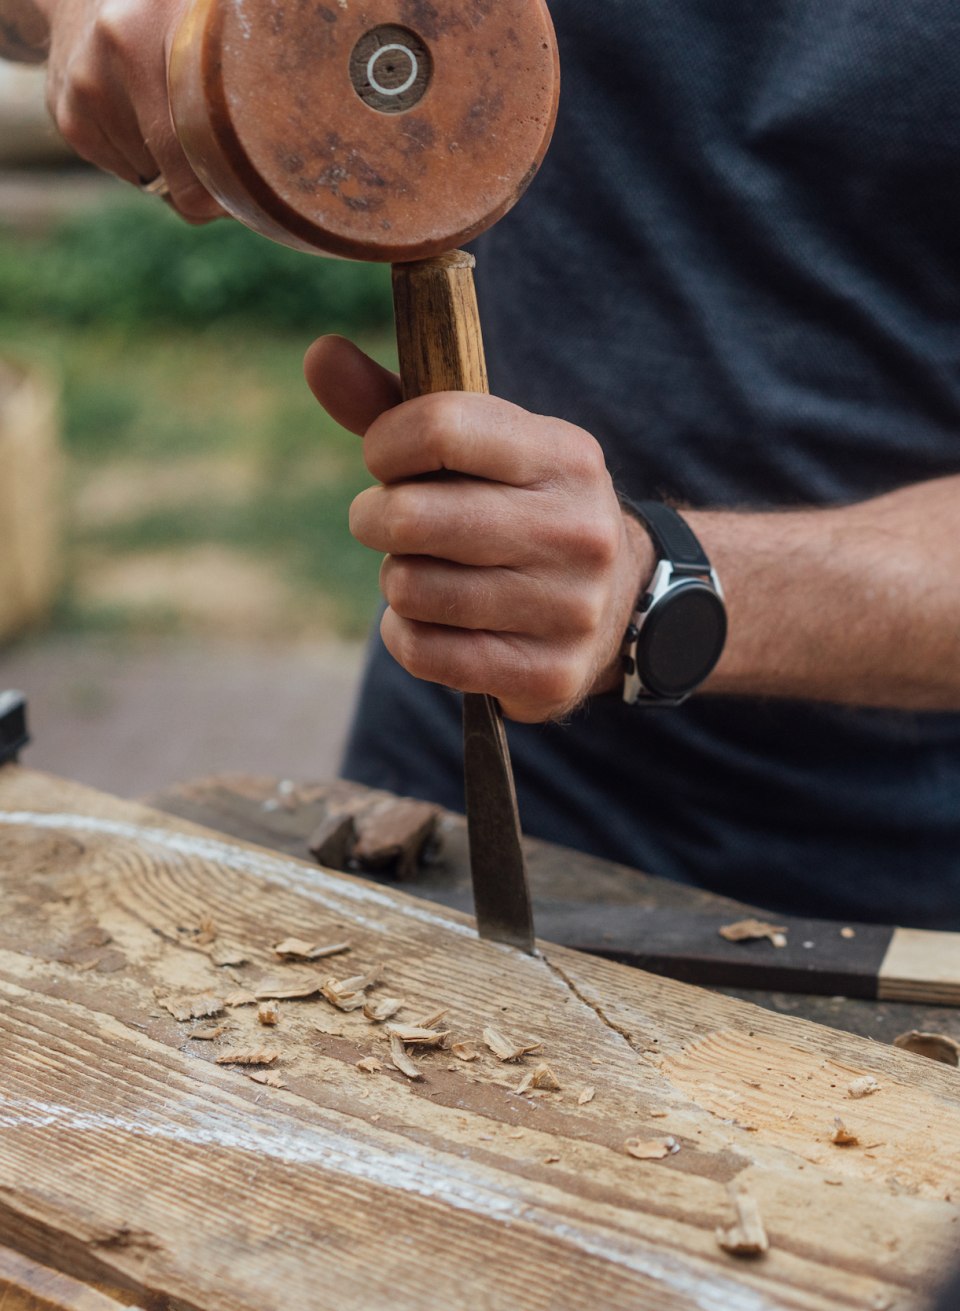 Fingerspitzengefühl: Andreas formt mit Klöppel und Meißel auf der Oberfläche des alten Holzstücks einen Fisch beim Bildhauer-Workshop., © TMV/Petermann